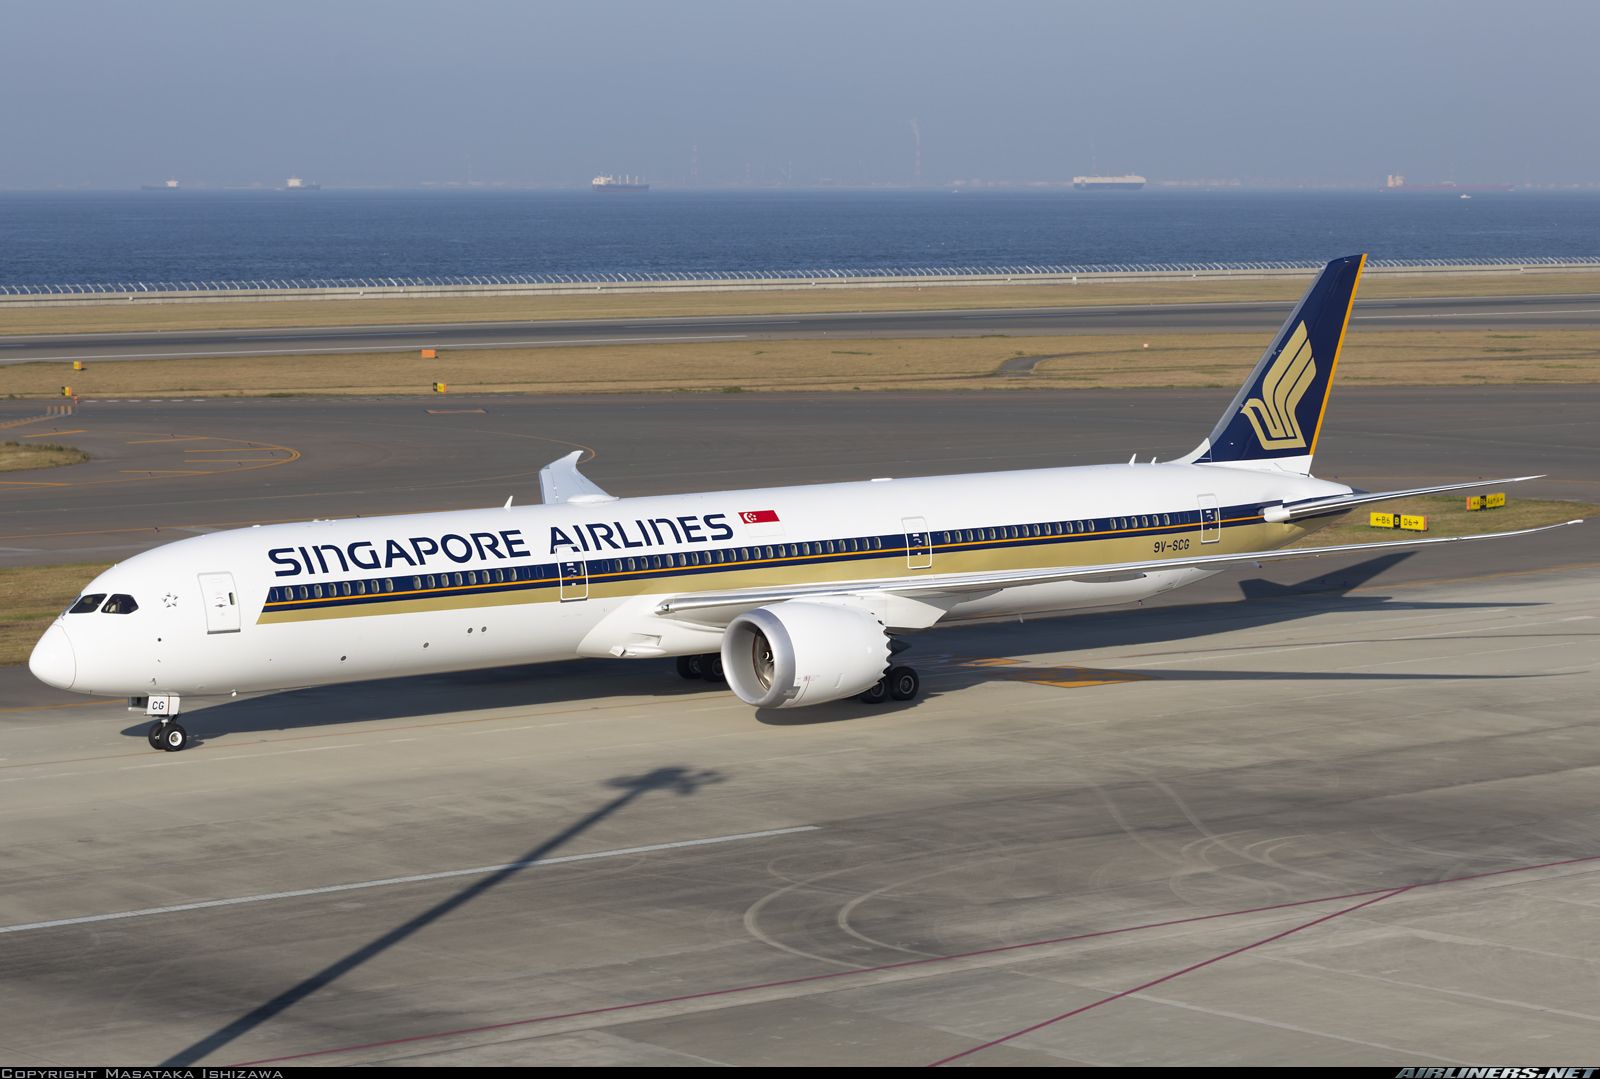 Recibe Singapore Airlines 540 mdd en ayuda | Aviación 21